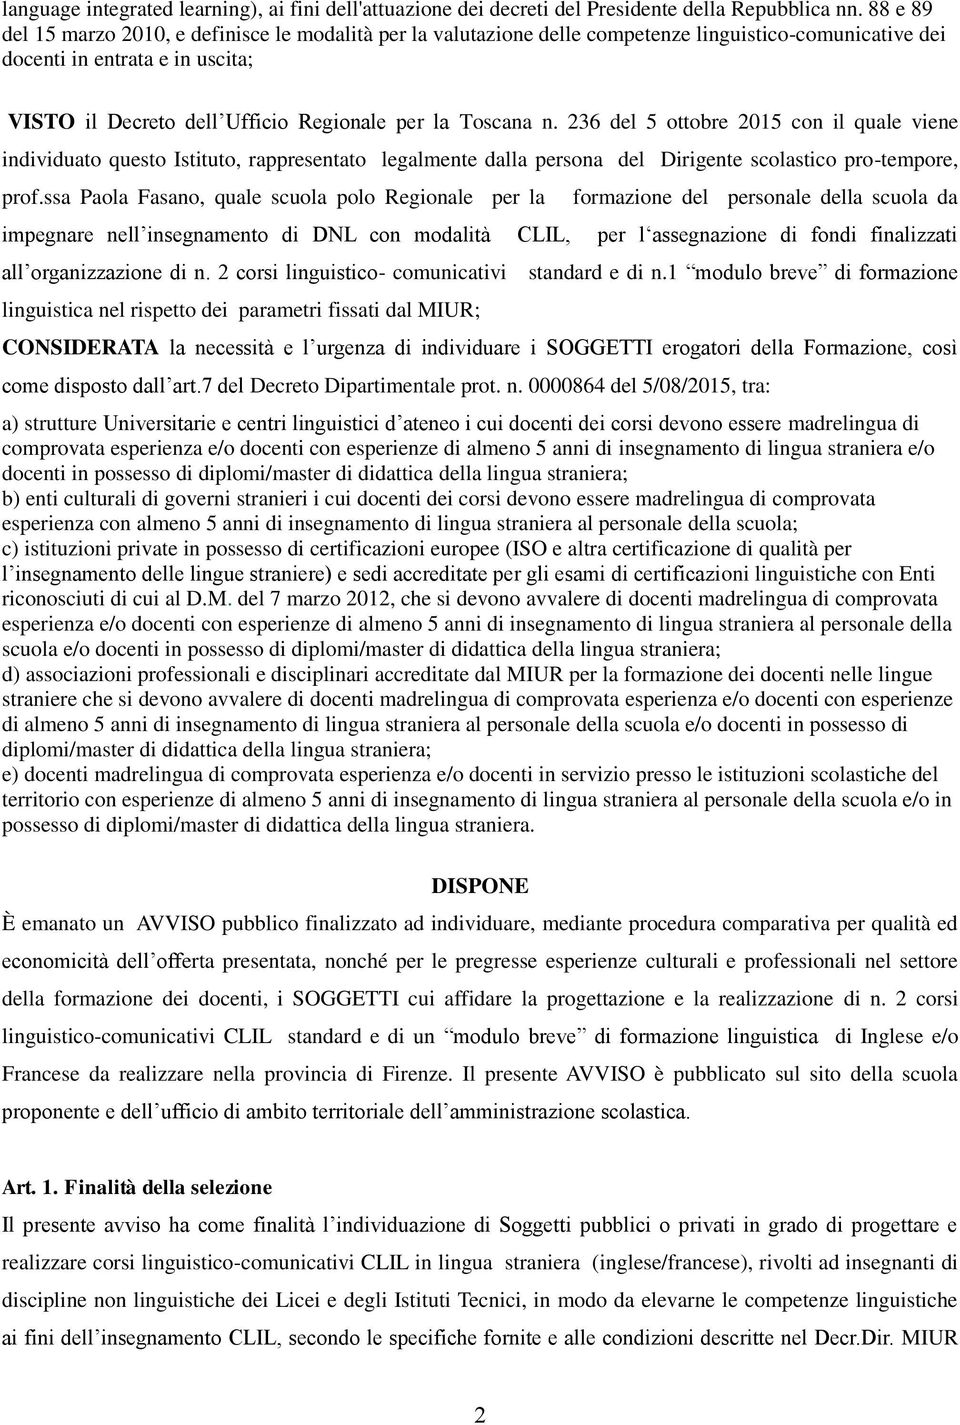 Toscana n. 236 del 5 ottobre 2015 con il quale viene individuato questo Istituto, rappresentato legalmente dalla persona del Dirigente scolastico pro-tempore, prof.